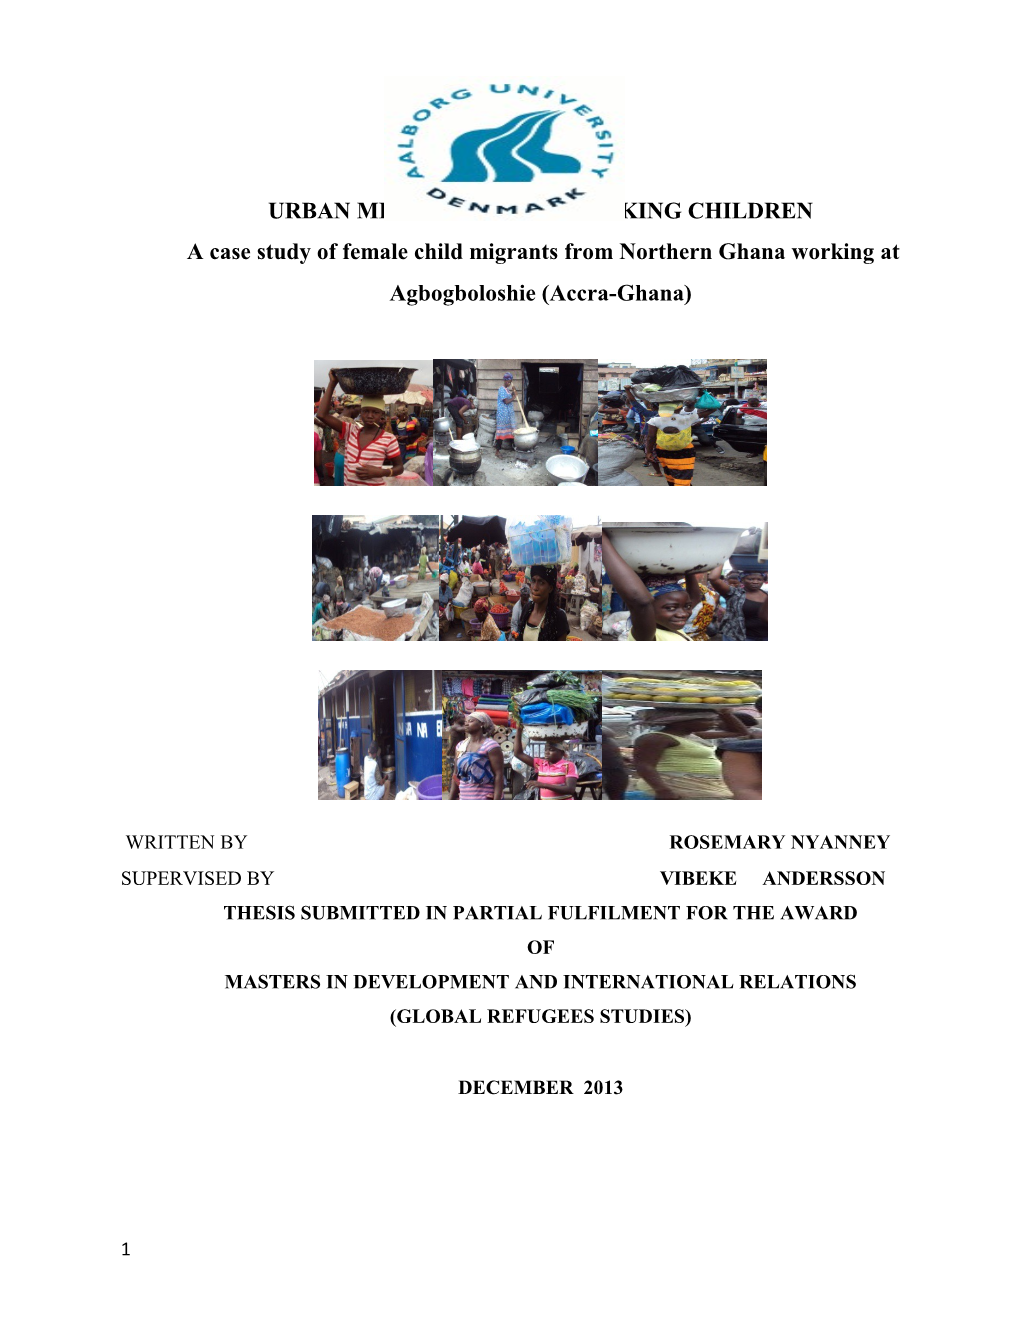 Urban Migration and Working Children